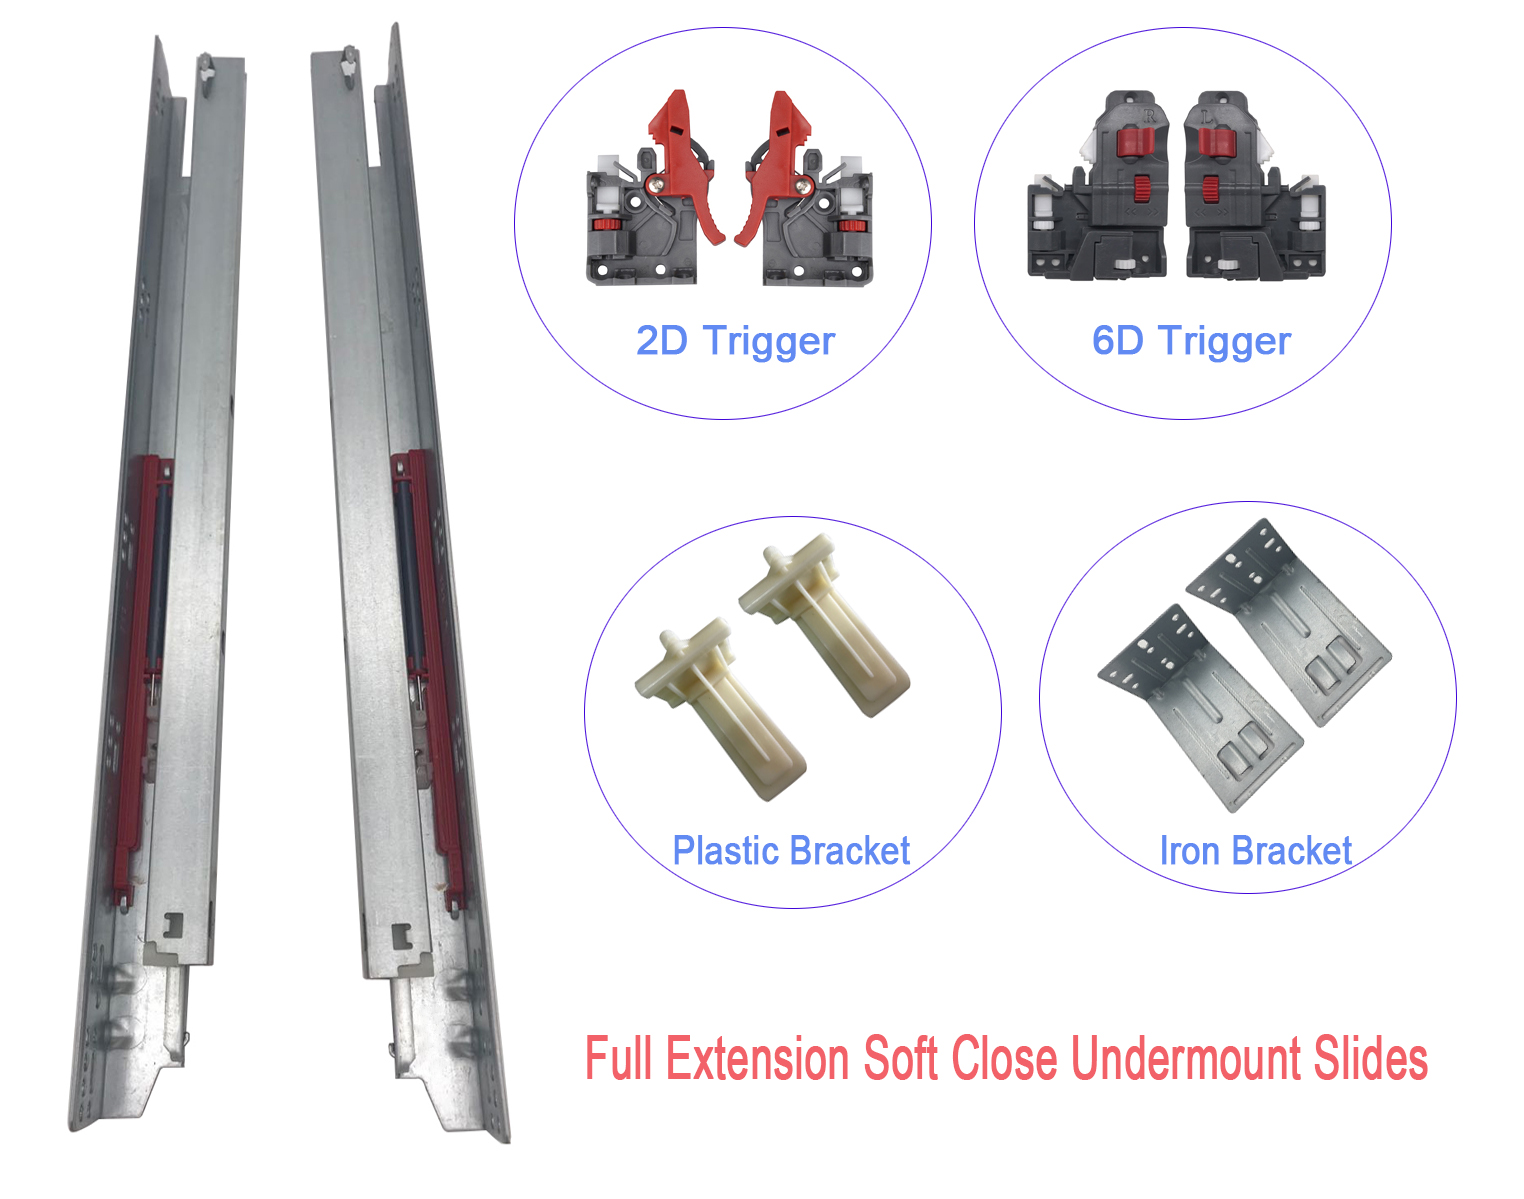 BTL Full Extension Soft Close Undermount Slides